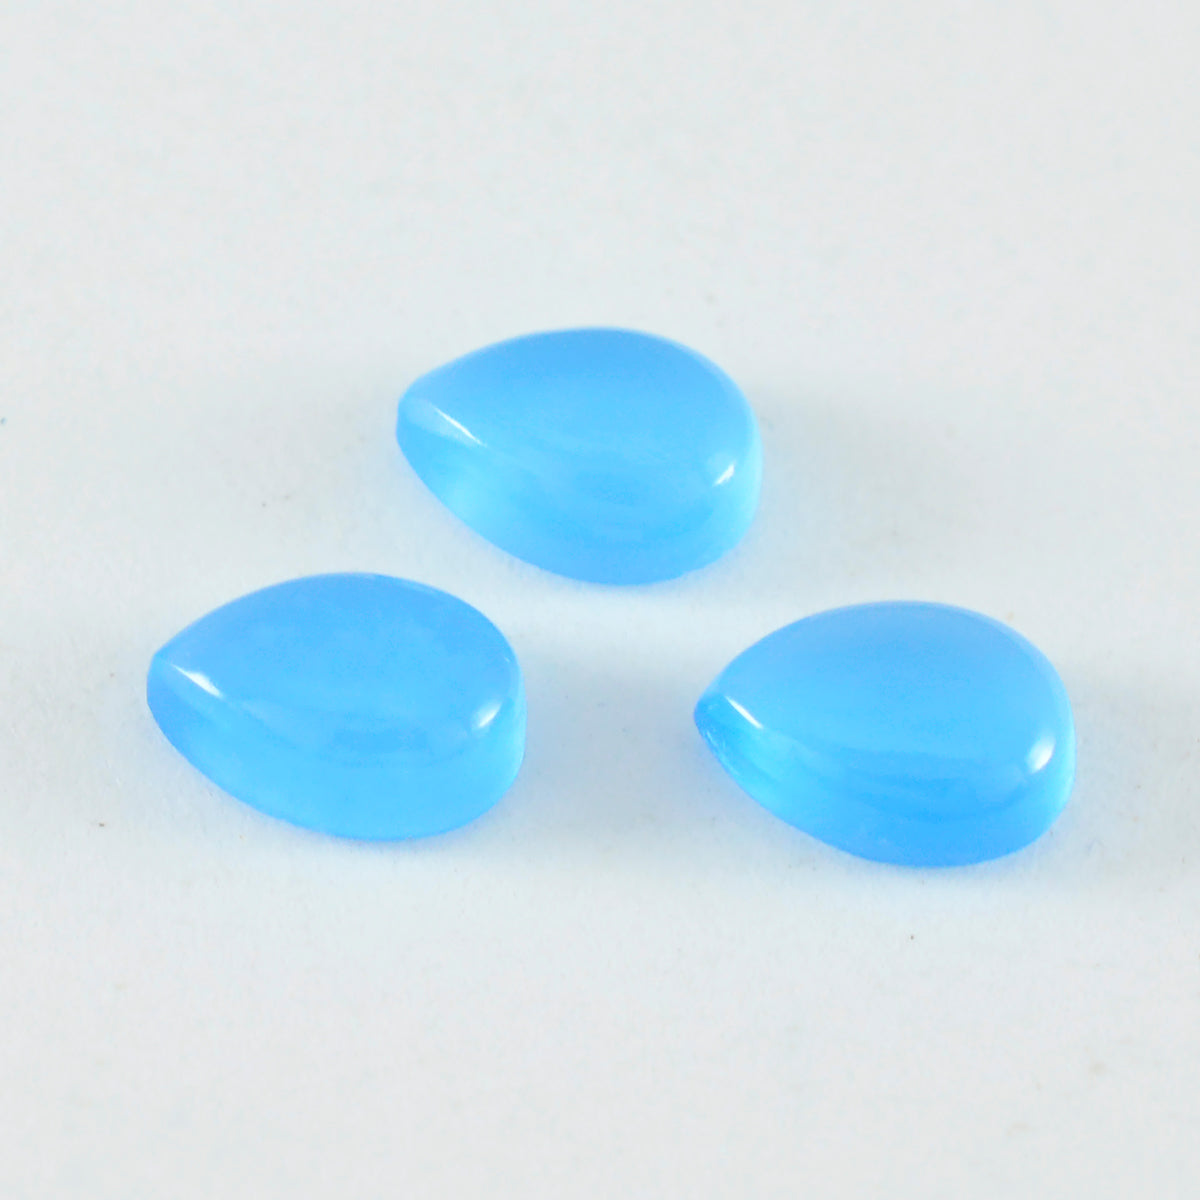 Riyogems 1 cabujón de calcedonia azul, 0.394 x 0.551 in, forma de pera A+1, piedra preciosa suelta de calidad